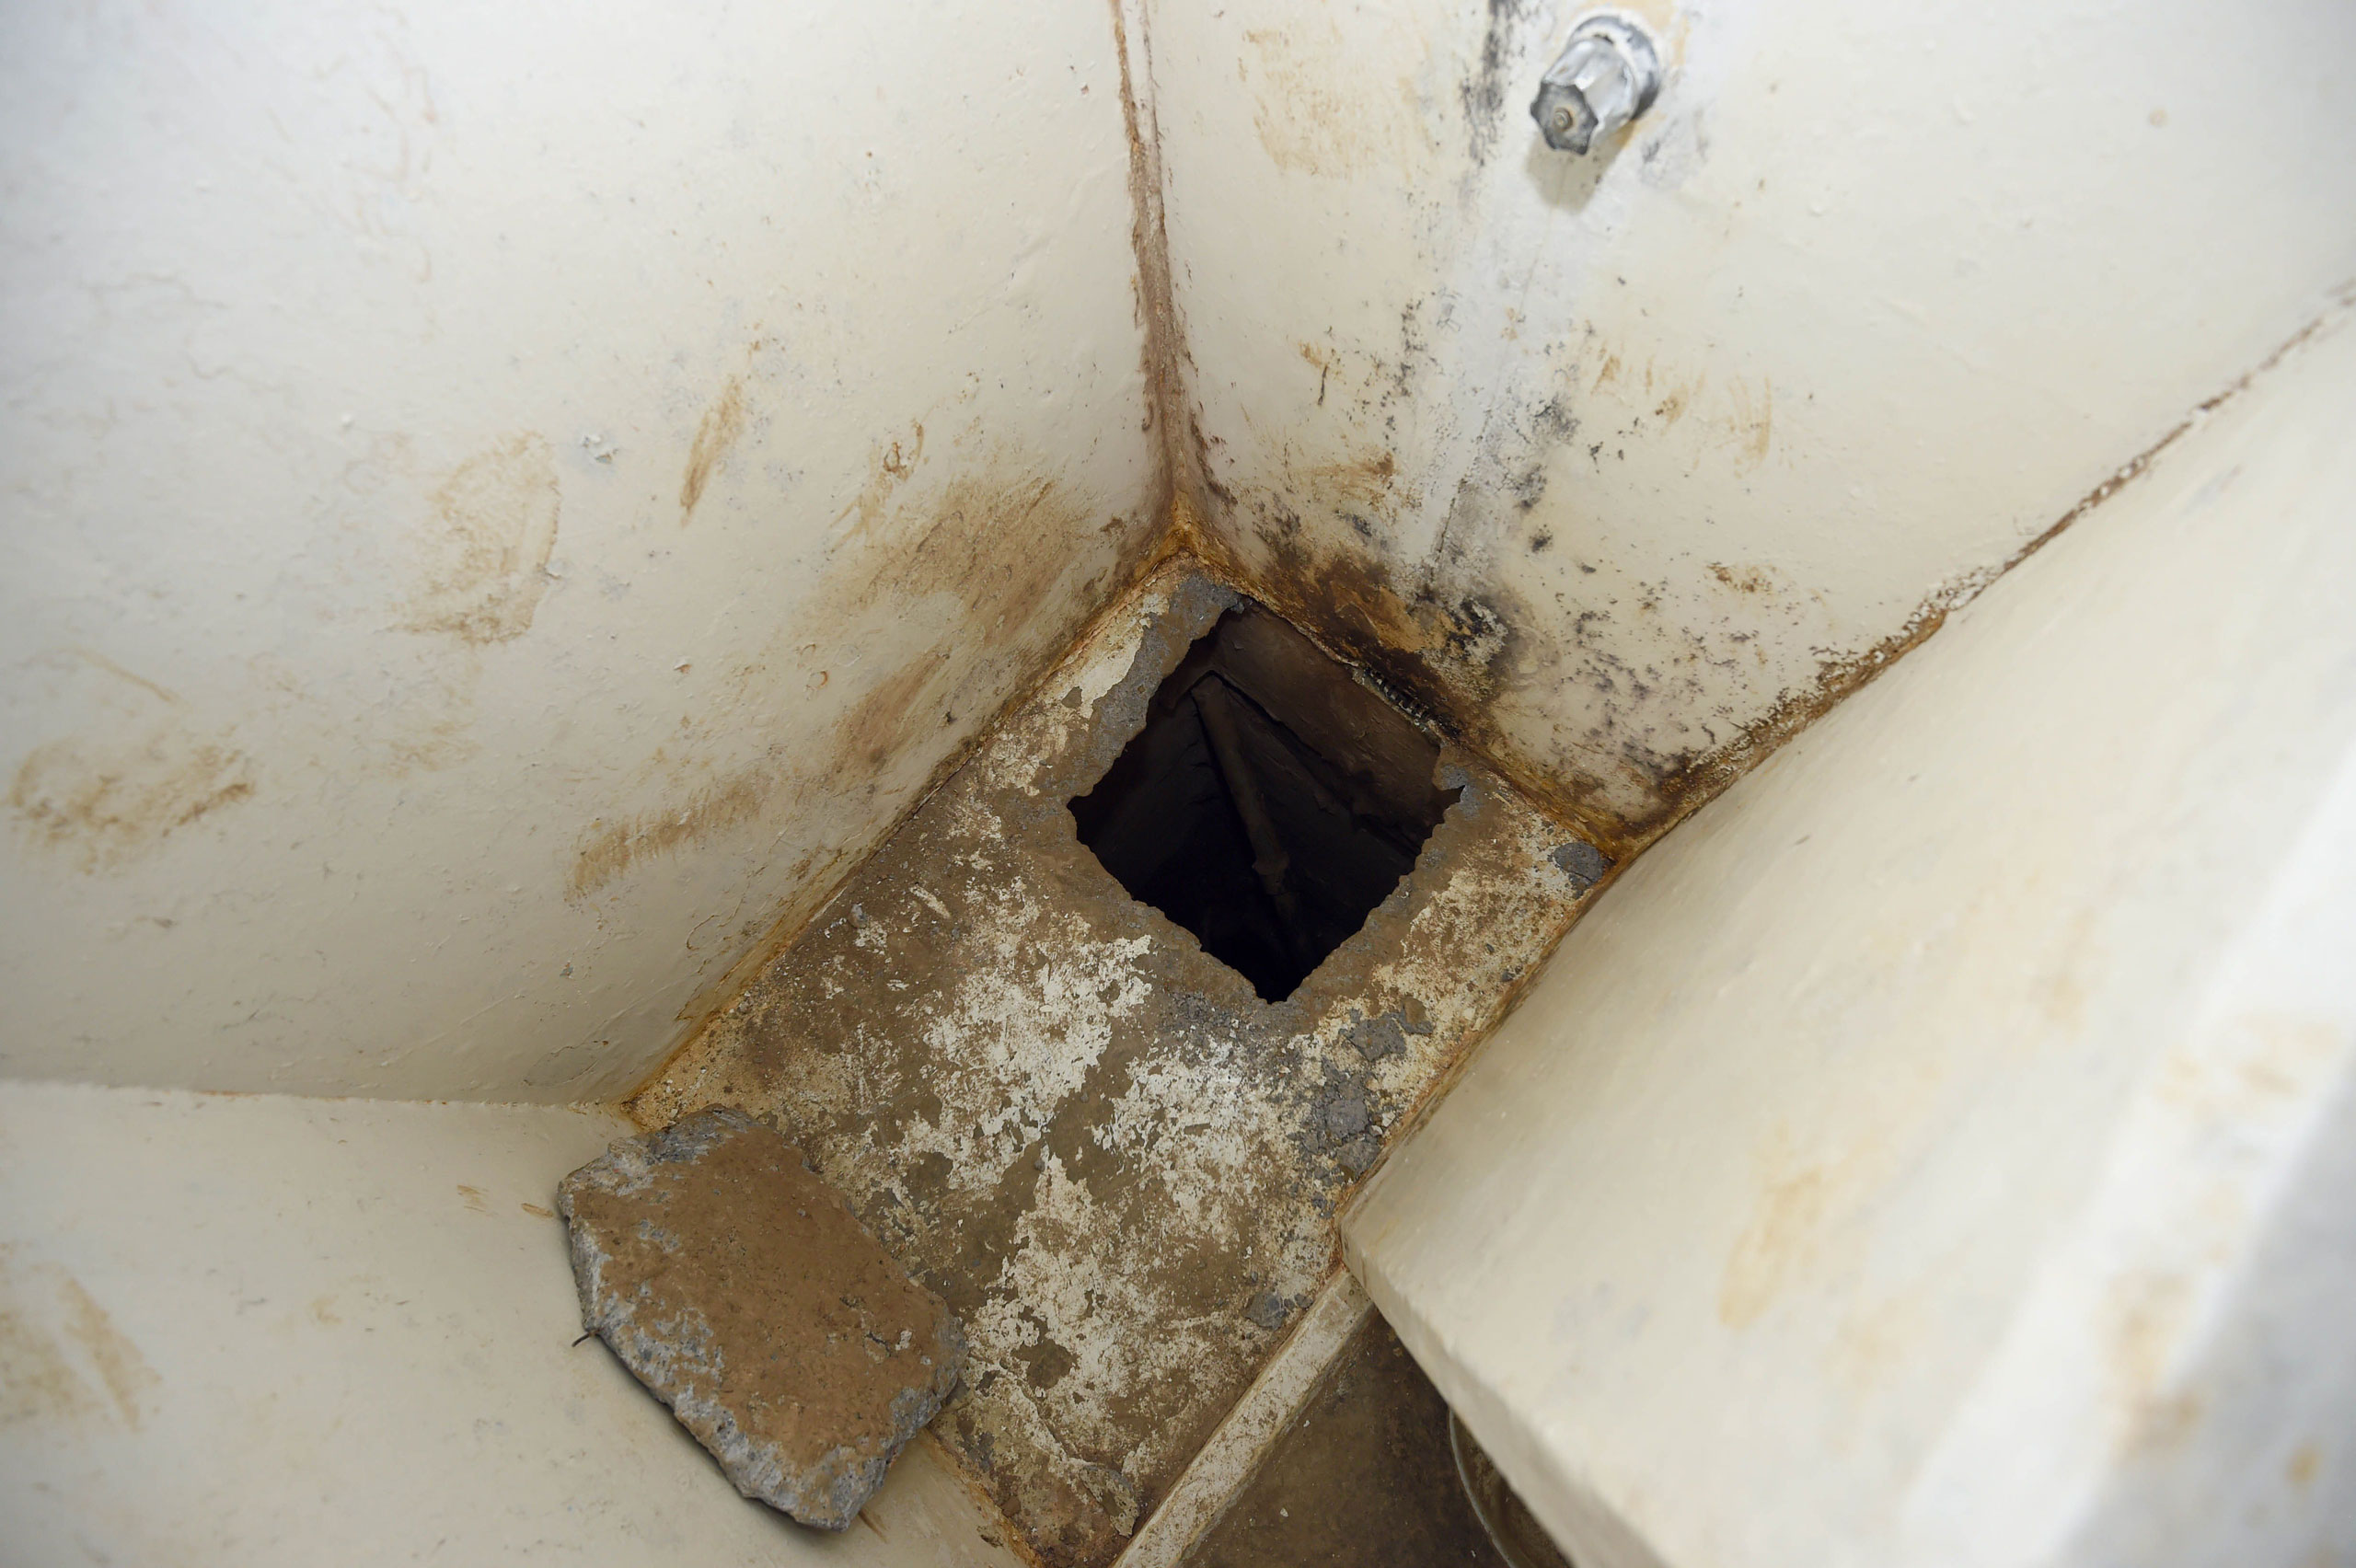 The shower from which Joaquin  El Chapo  Guzman escaped through a tunnel, in Almoloya de Juarez, Mexico, on July 15, 2015.